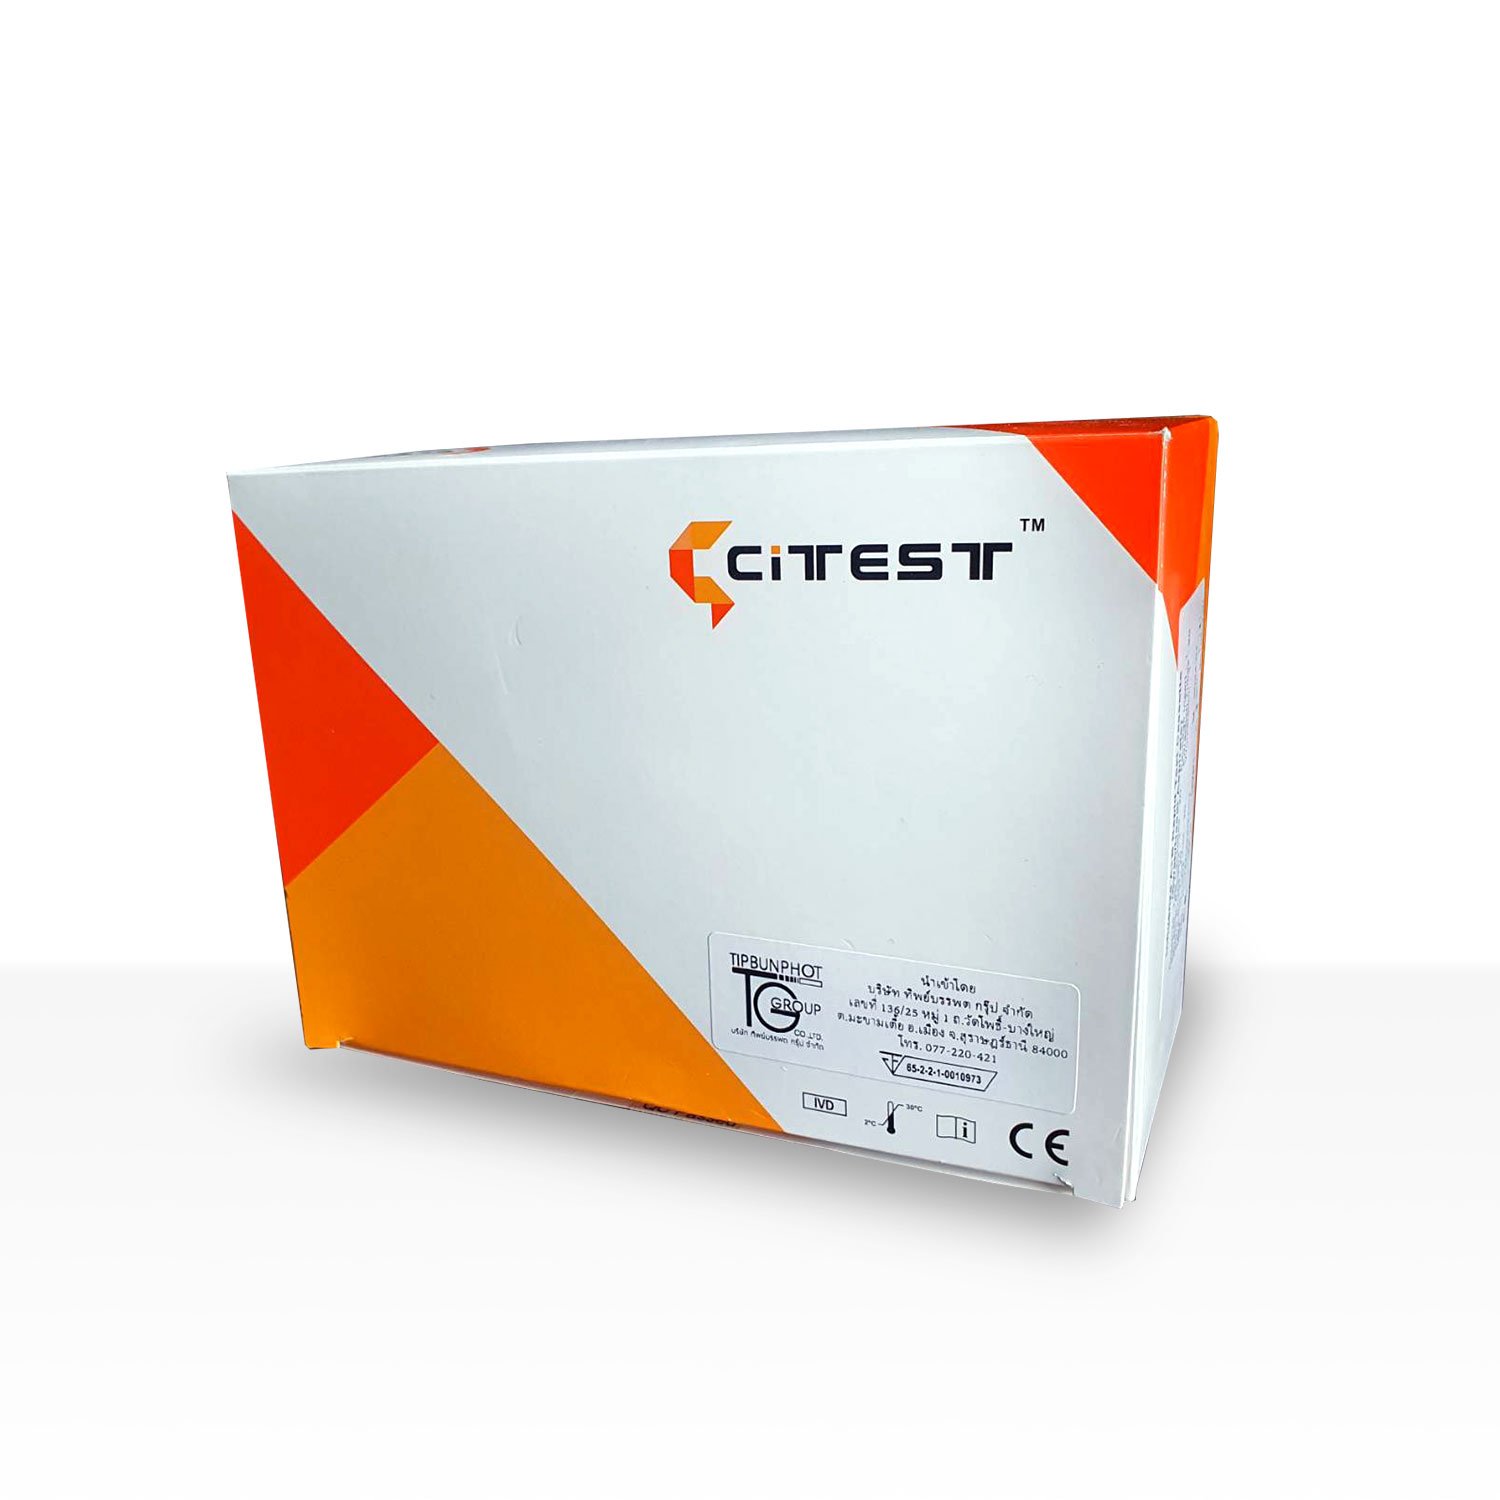 CITEST HBsAg Rapid Test (Cassette) - pdiagnostics